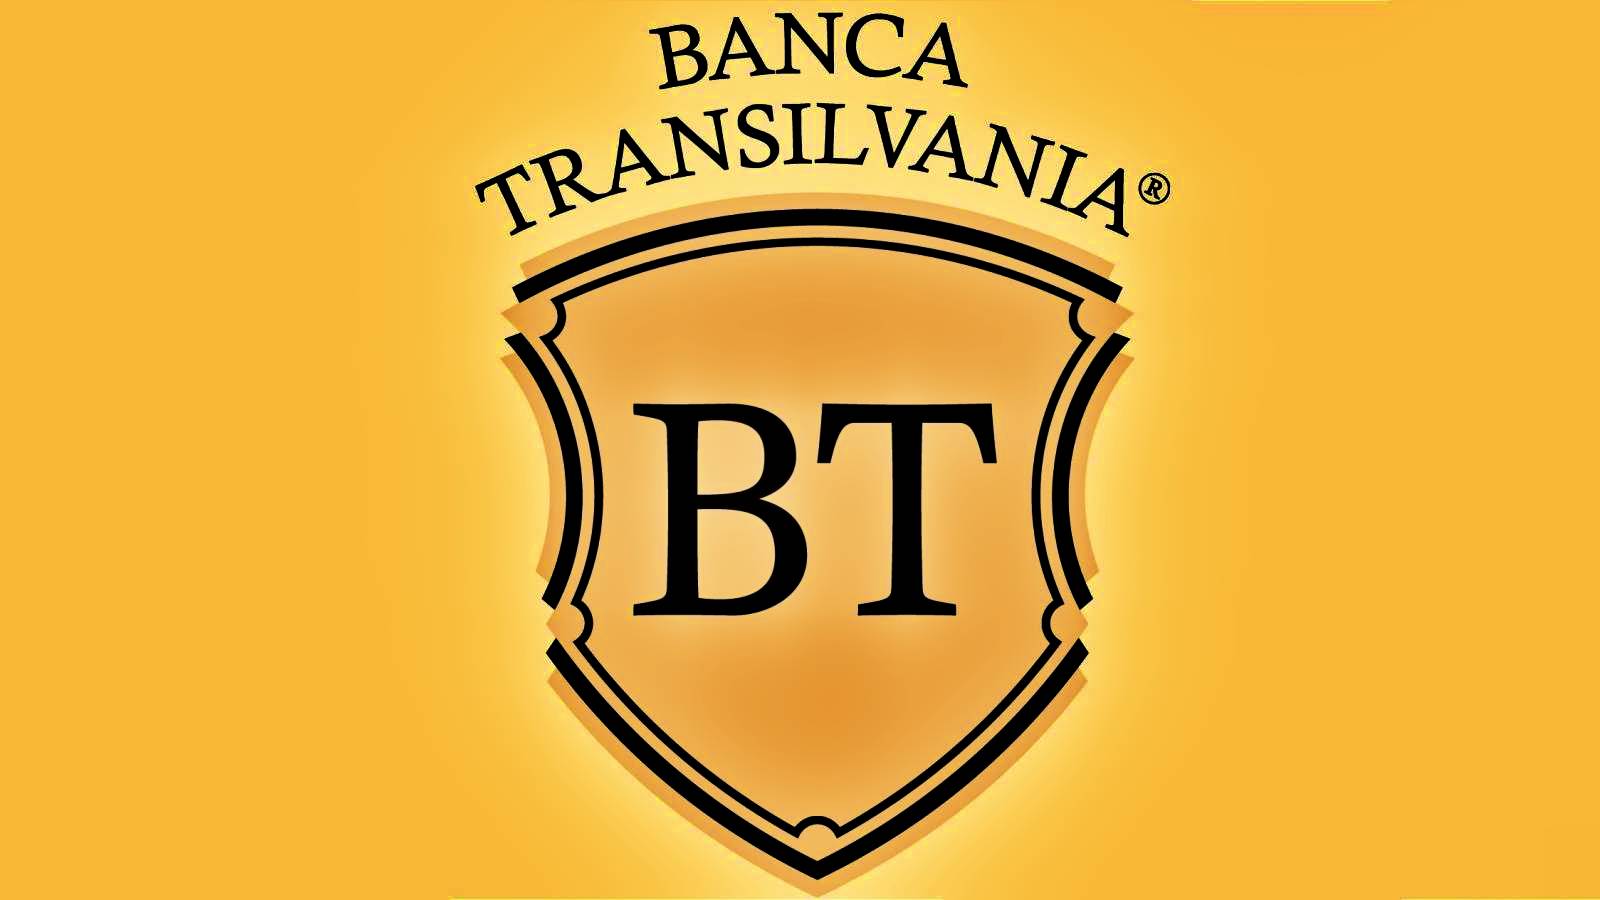 BANCA Transilvania El mensaje OFICIAL está dirigido a clientes que no conocían